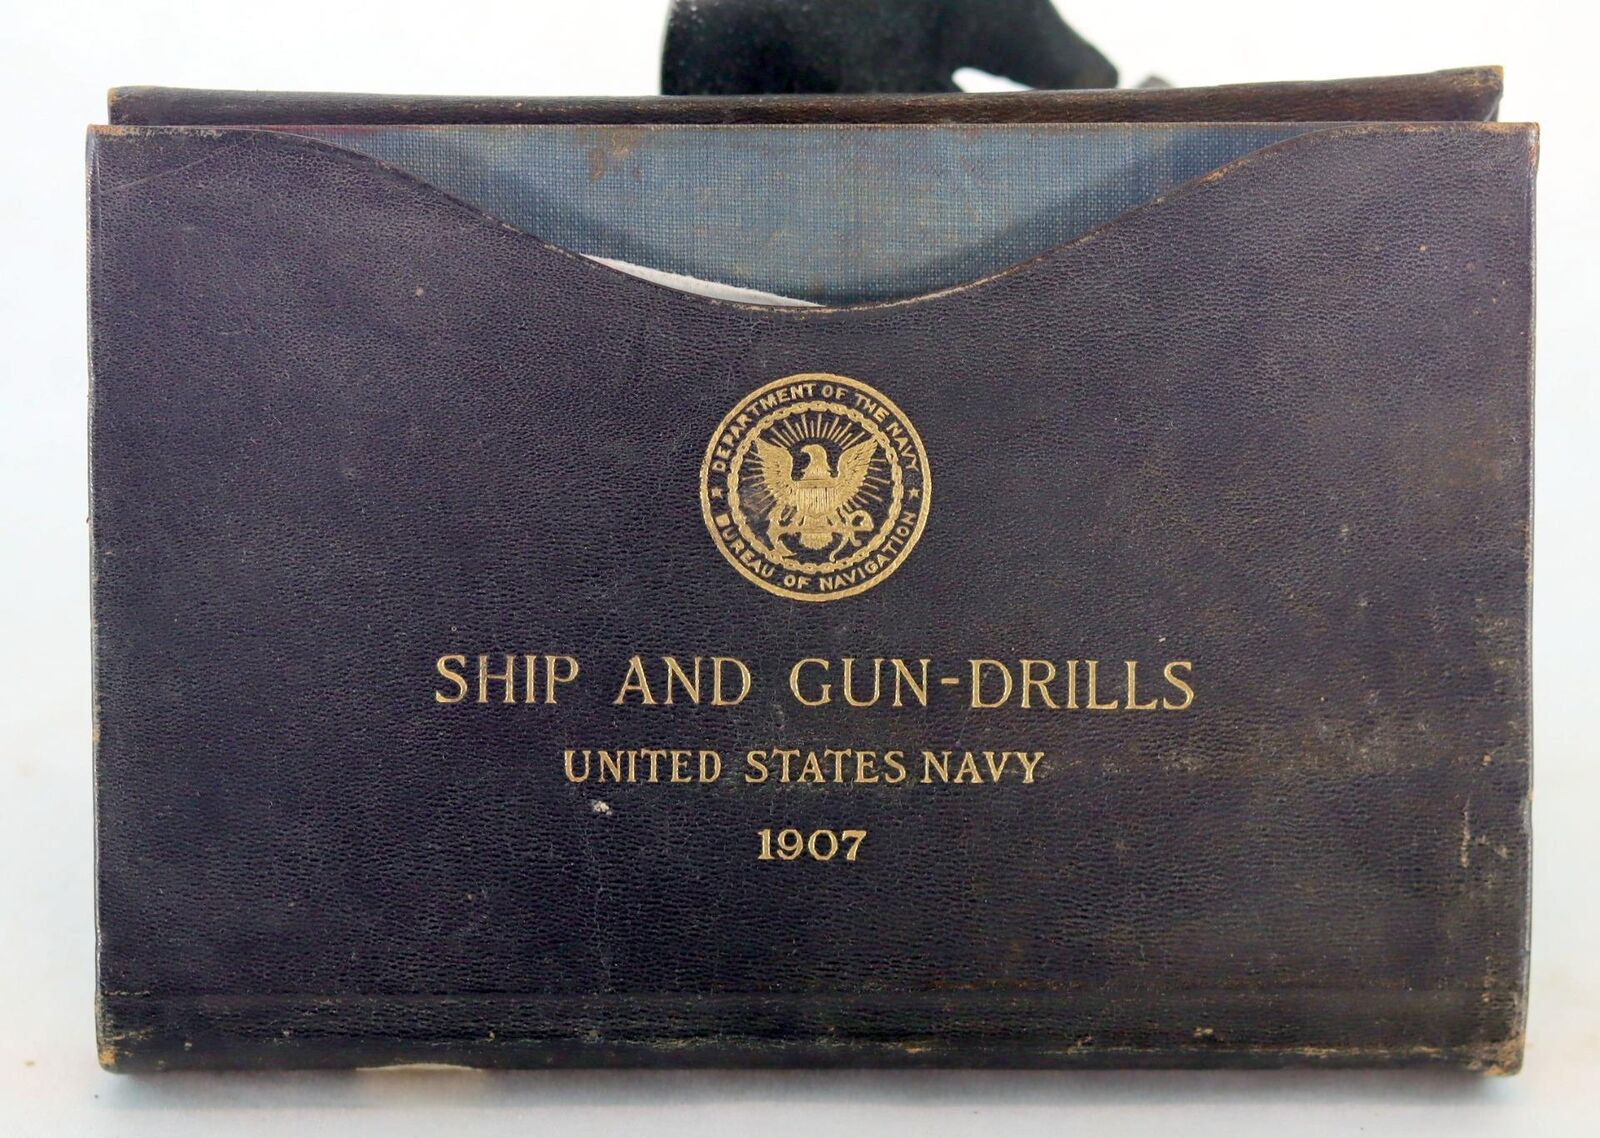 1907 Ship and Gun-Drills United States Navy USS Leonidas AD-7 Destroyer Tender